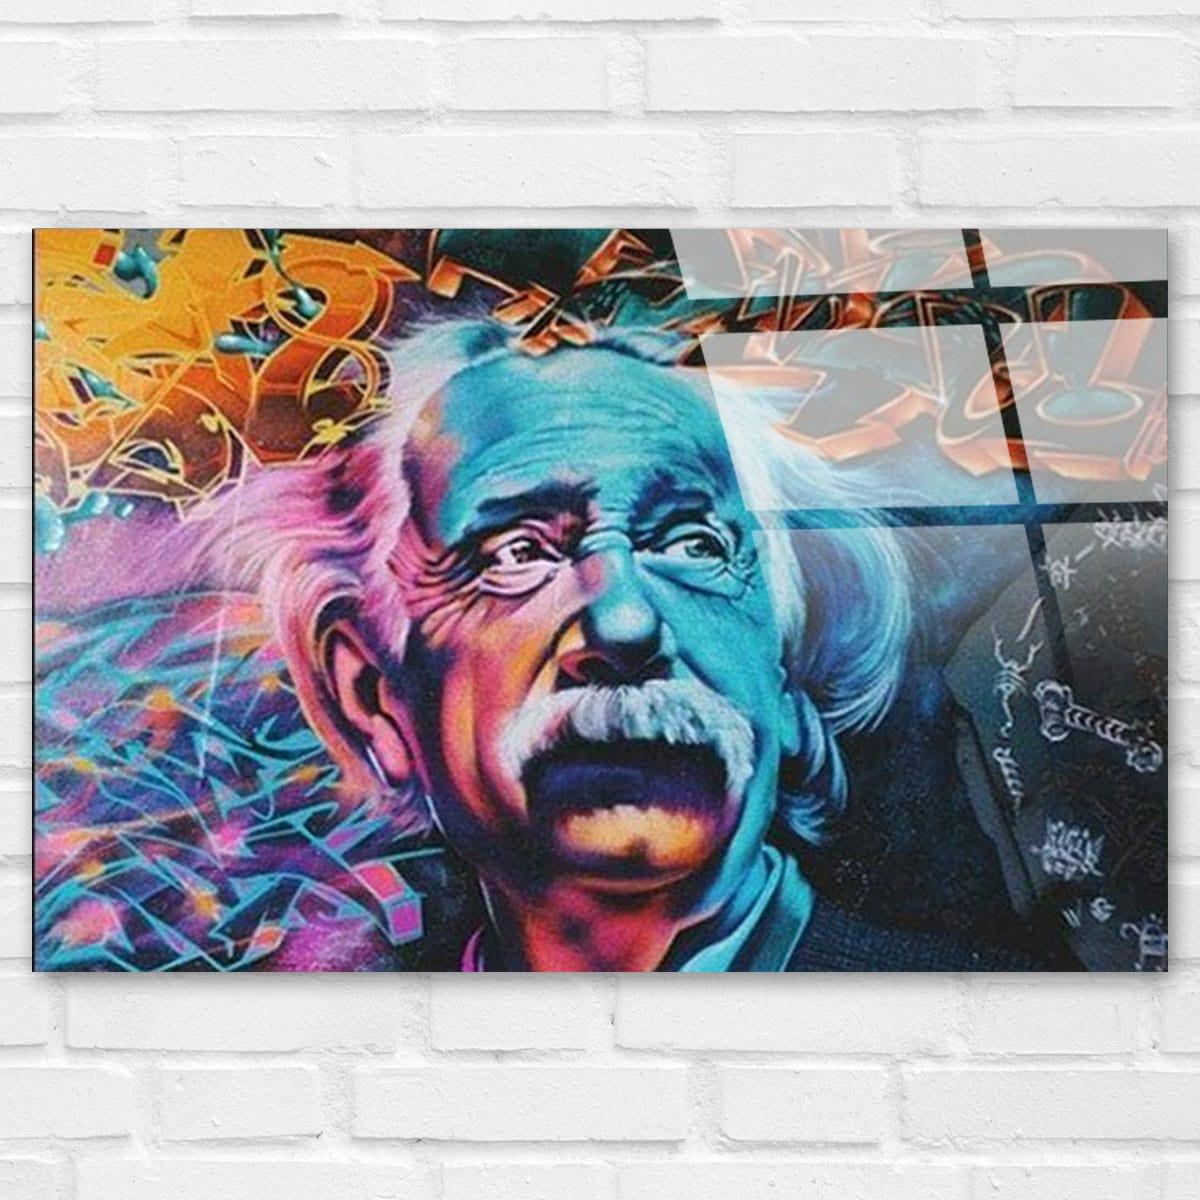 Décoration murale affiche d'Einstein